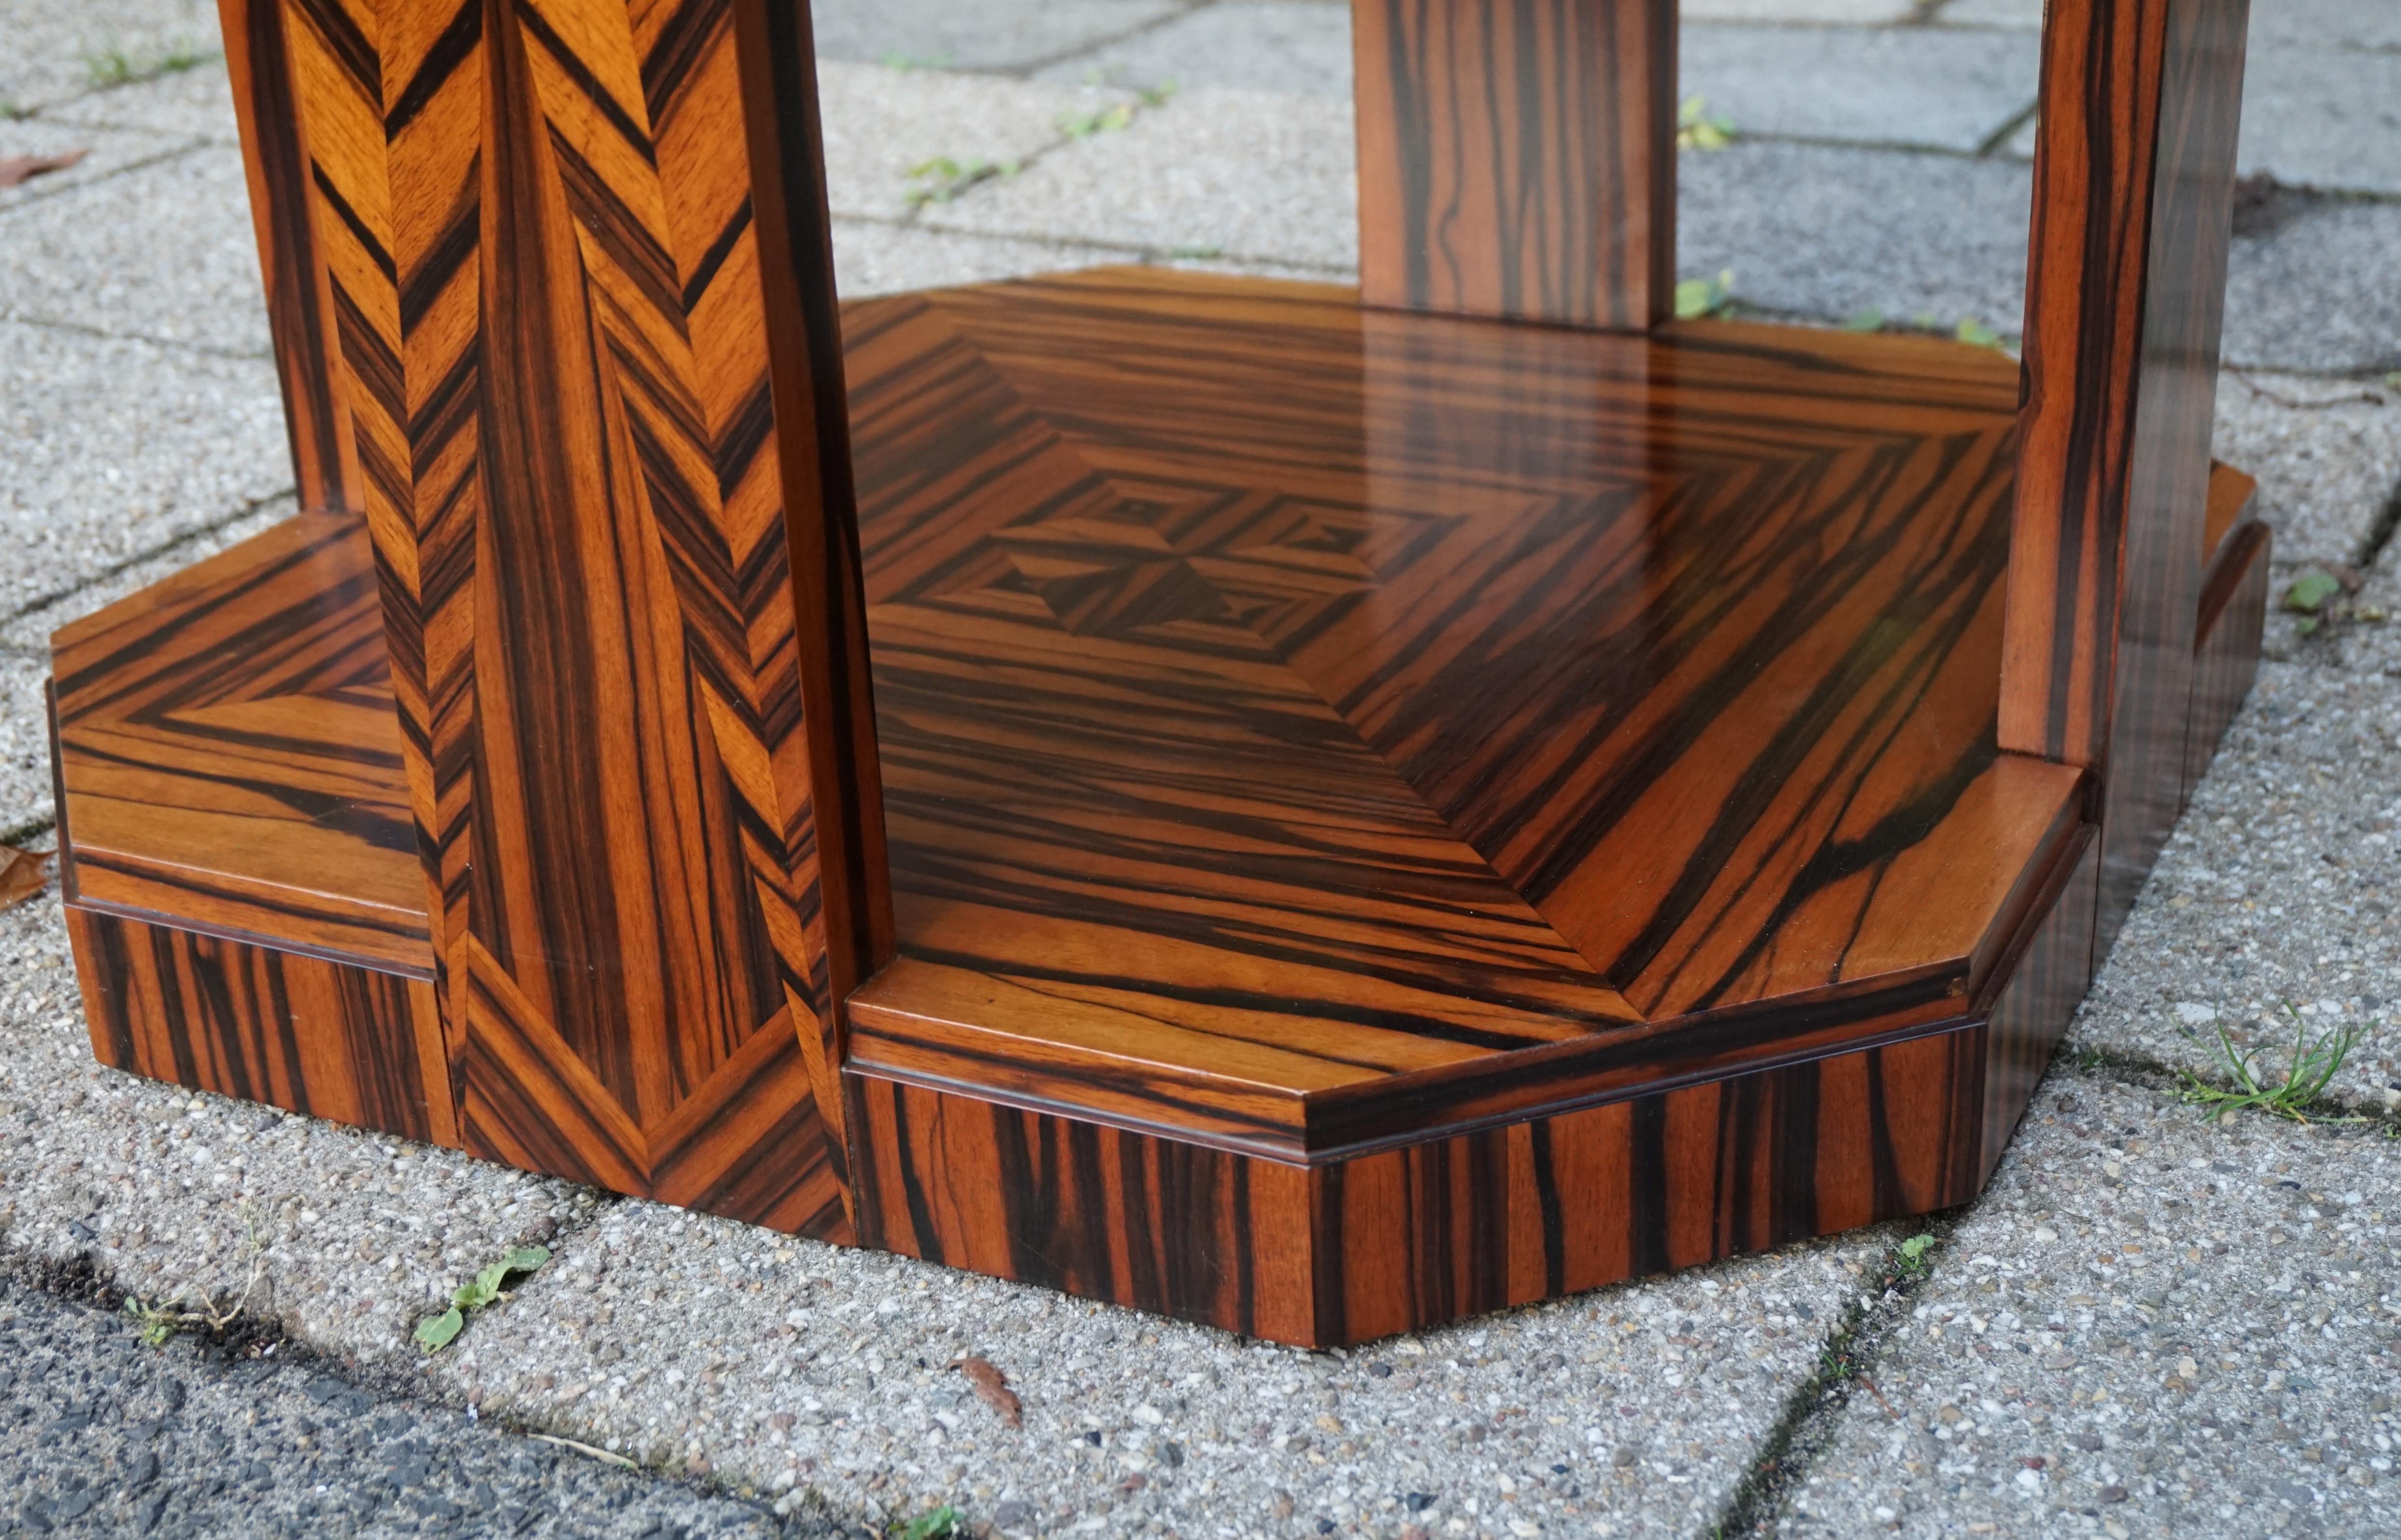 Wood Unique Coromandel Art Deco Étagère Table with Stunning Inlaid Geometric Patterns